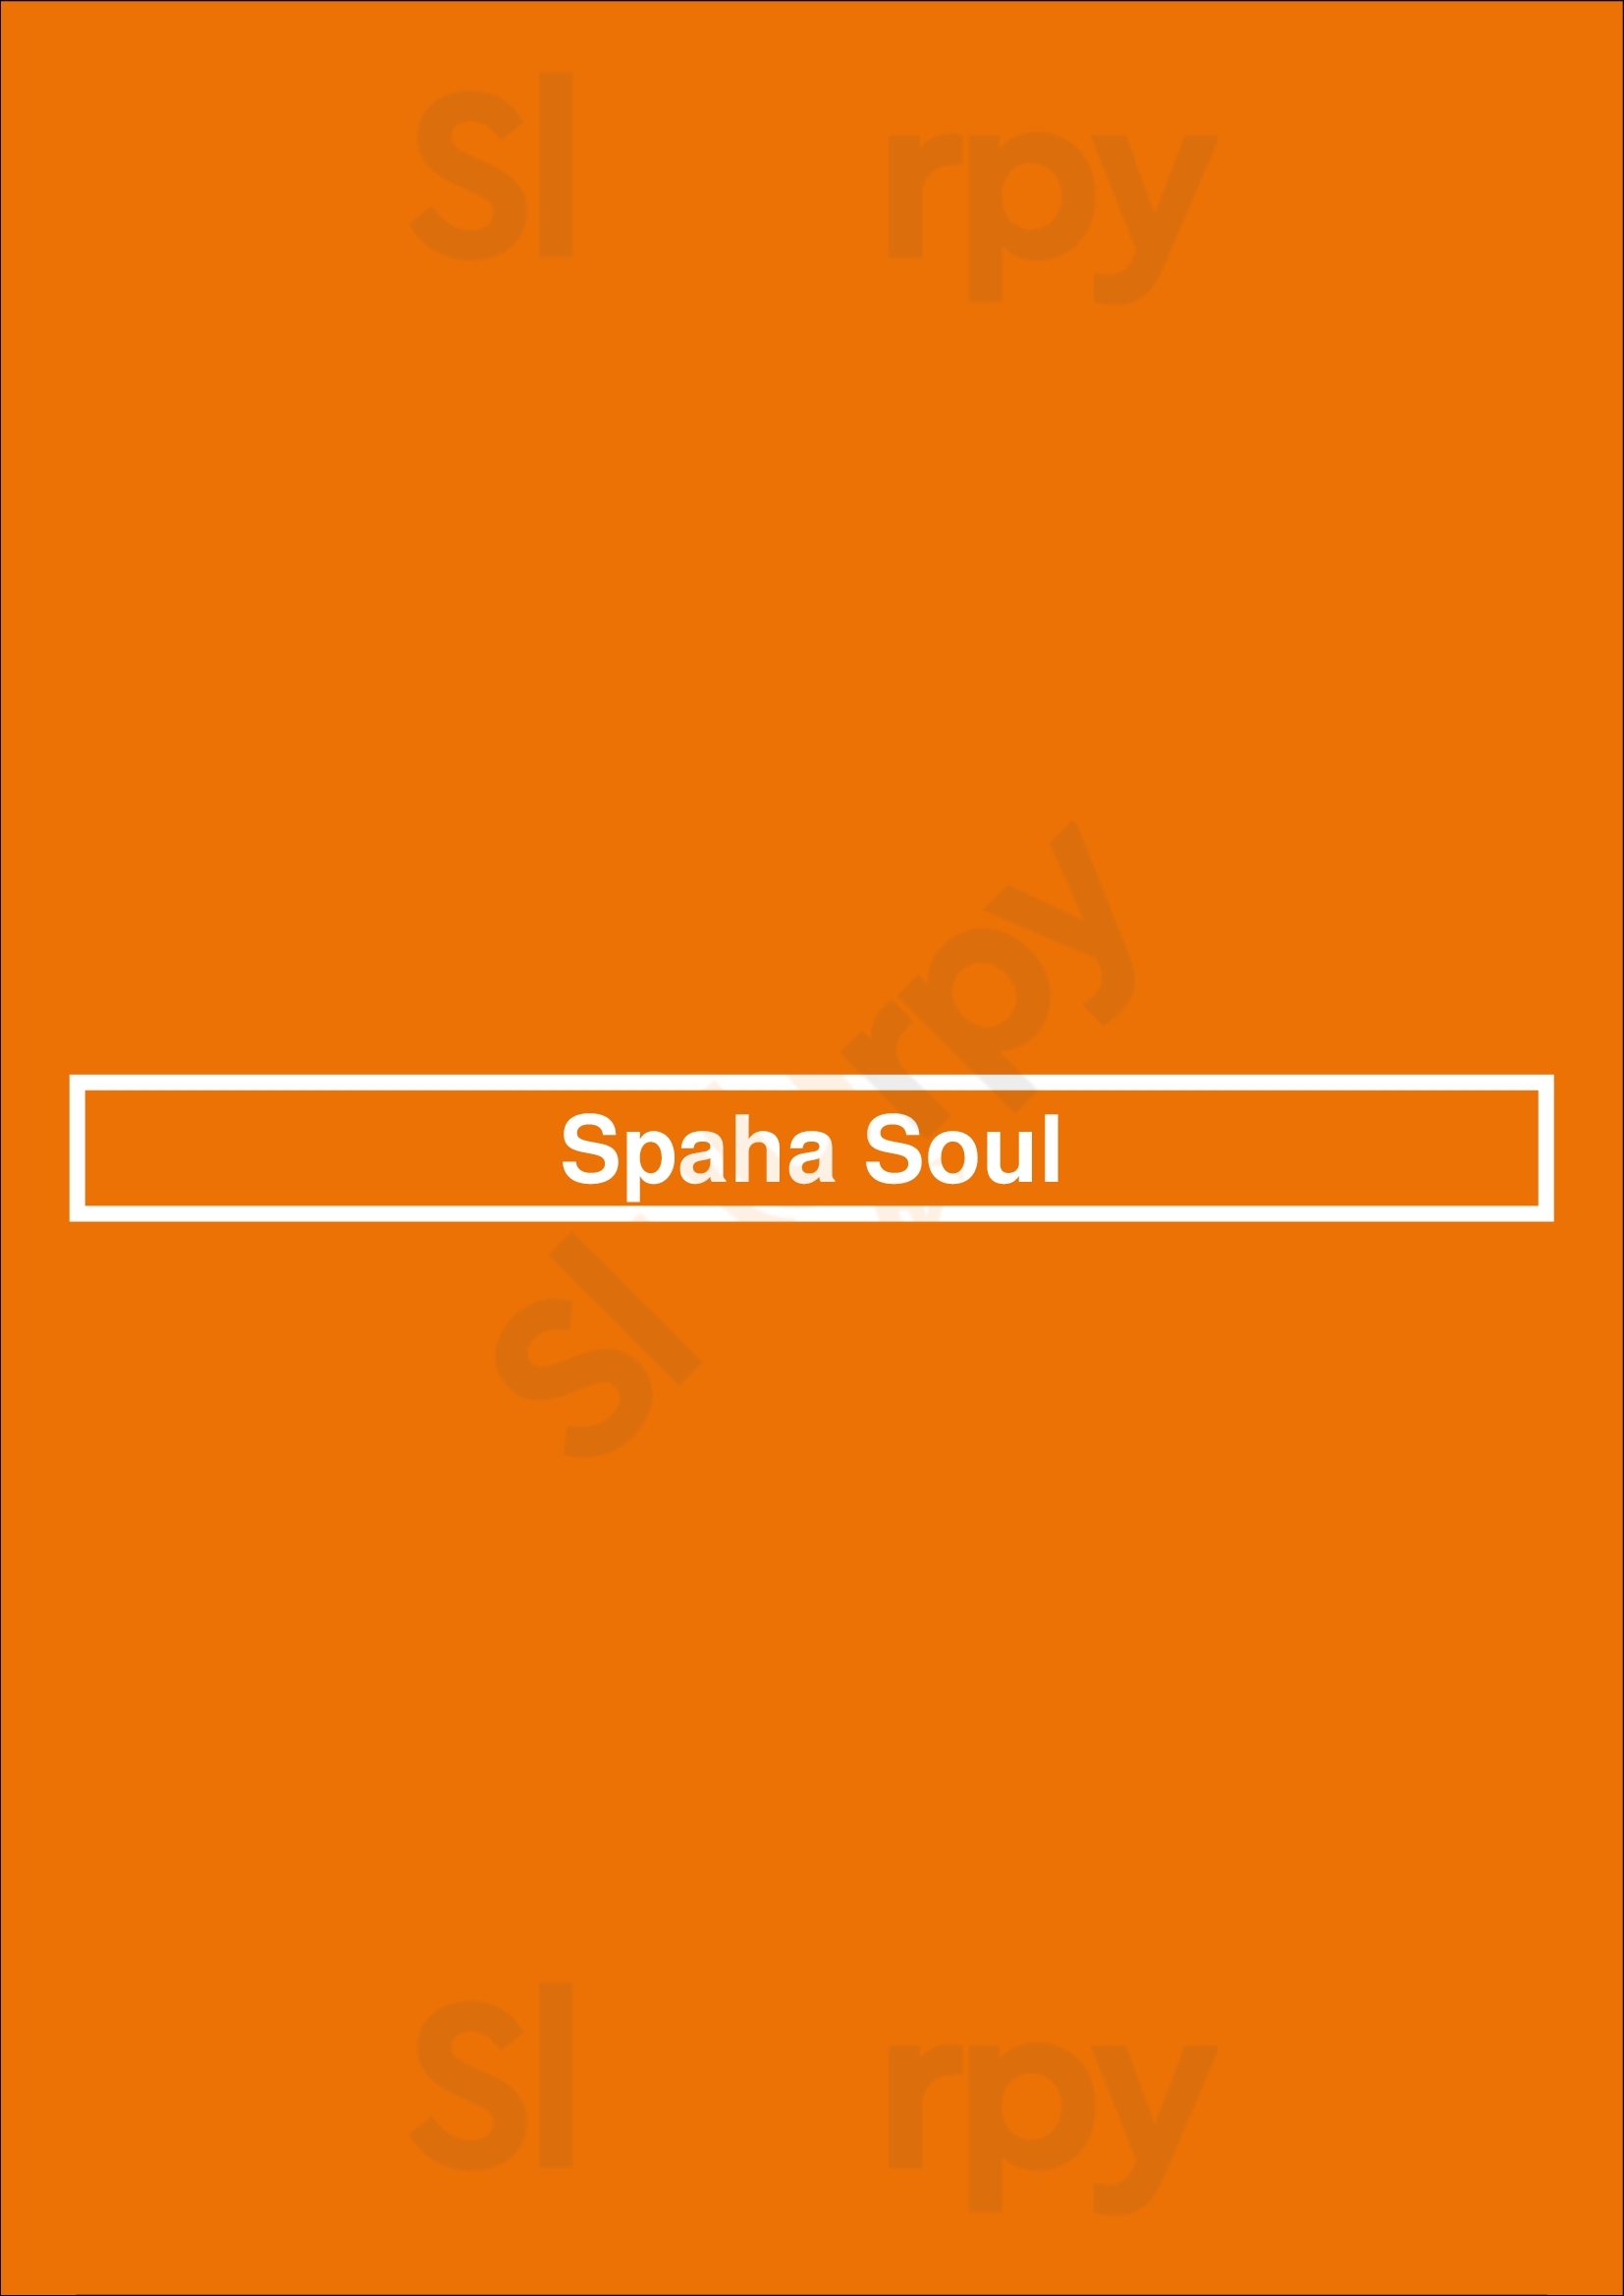 Spaha Soul New York City Menu - 1